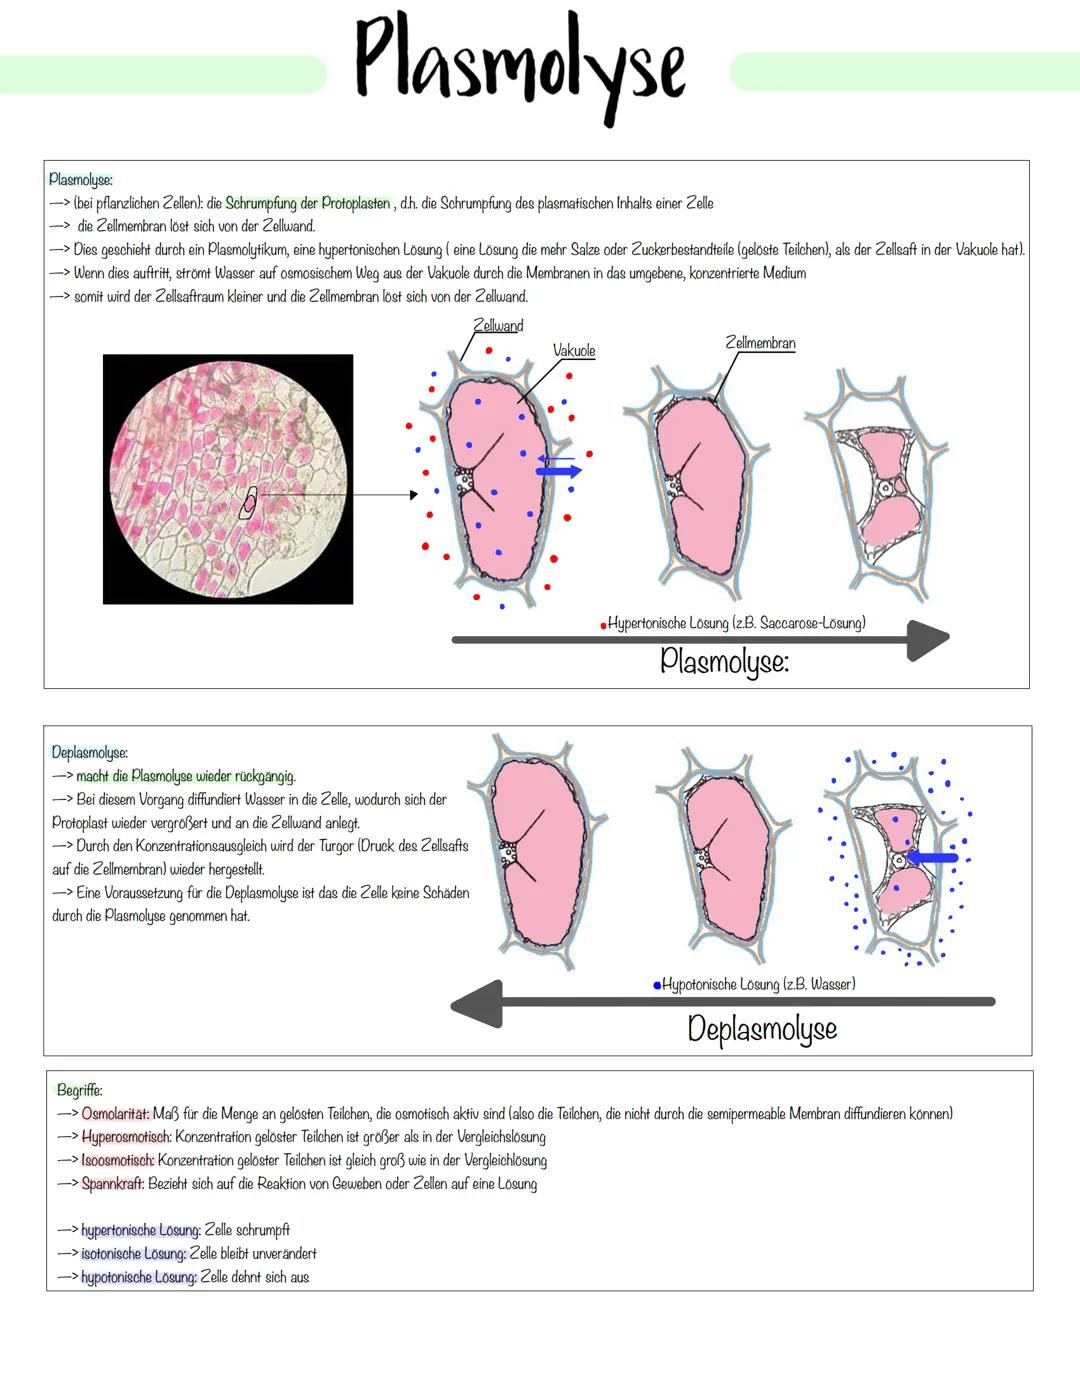 Zellbiologie Zellorganelle
Organell Tierzelle Pflanzenzelle Funktion
Zellkern ✓ ✓
Zellmembran ✓
Zellwand X ✓
Cytoplasma ✓ V
Vakuole X ✓
Mito